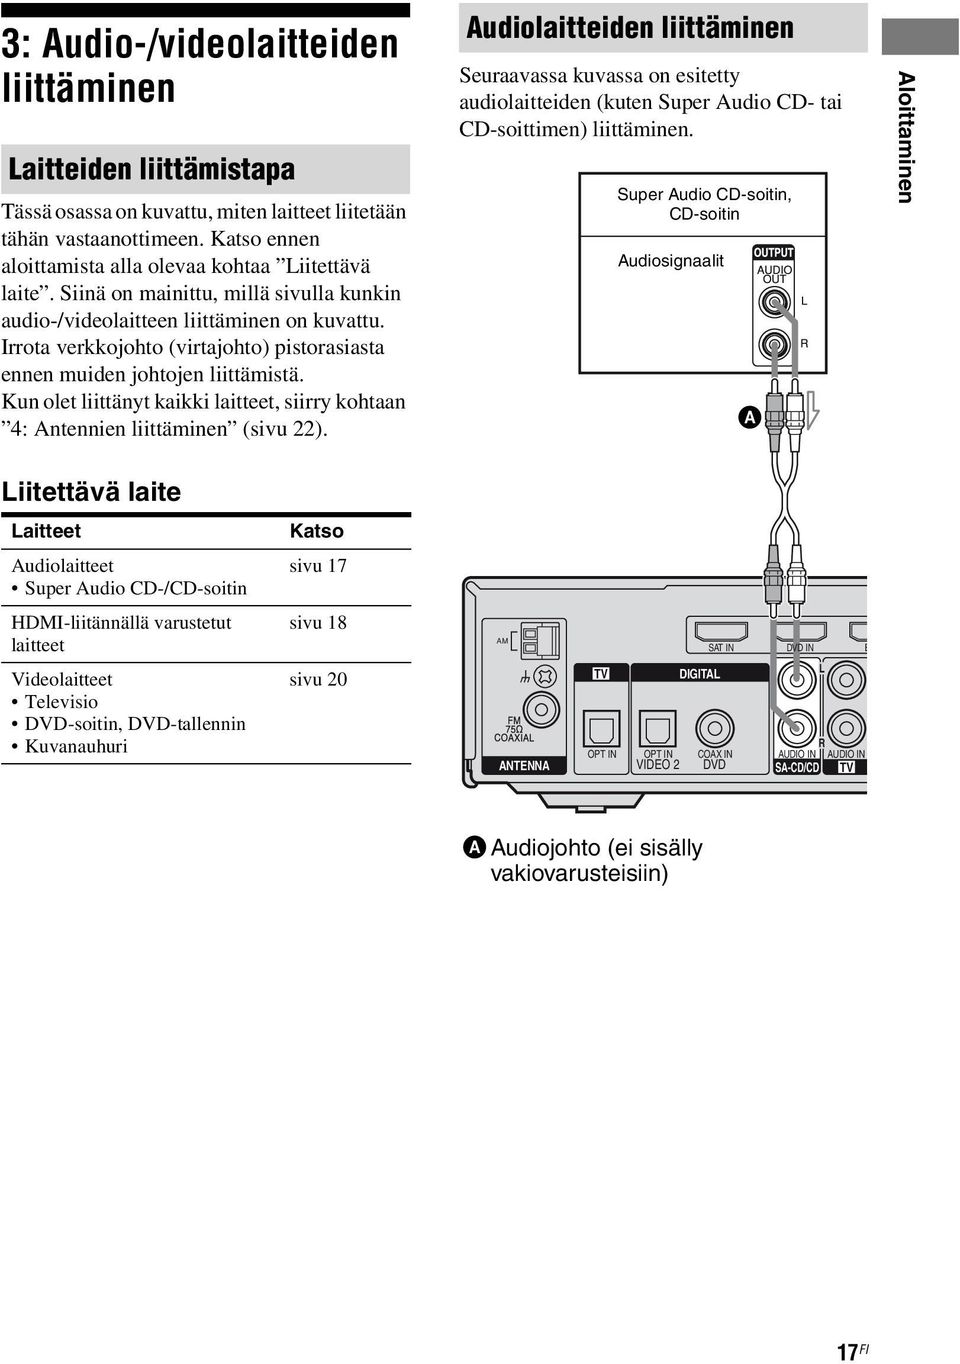 Kun olet liittänyt kaikki laitteet, siirry kohtaan 4: Antennien liittäminen (sivu 22).